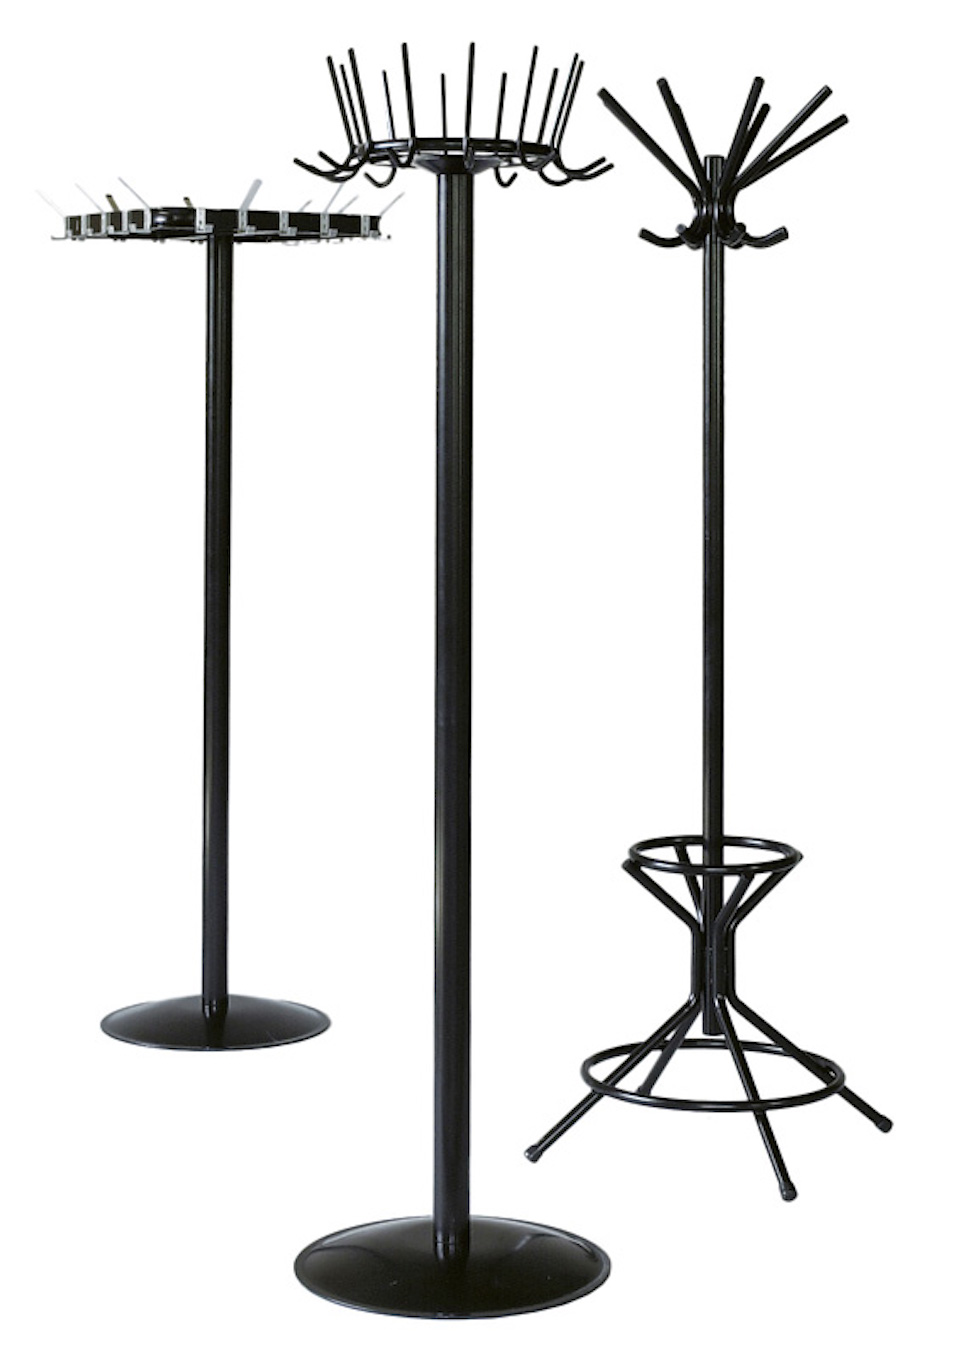 Freistehender Garderoben- & Regenschirmständer aus Metall | Höhe 178cm | Drehbare Krone & 8 Doppelhaken | Schwarz